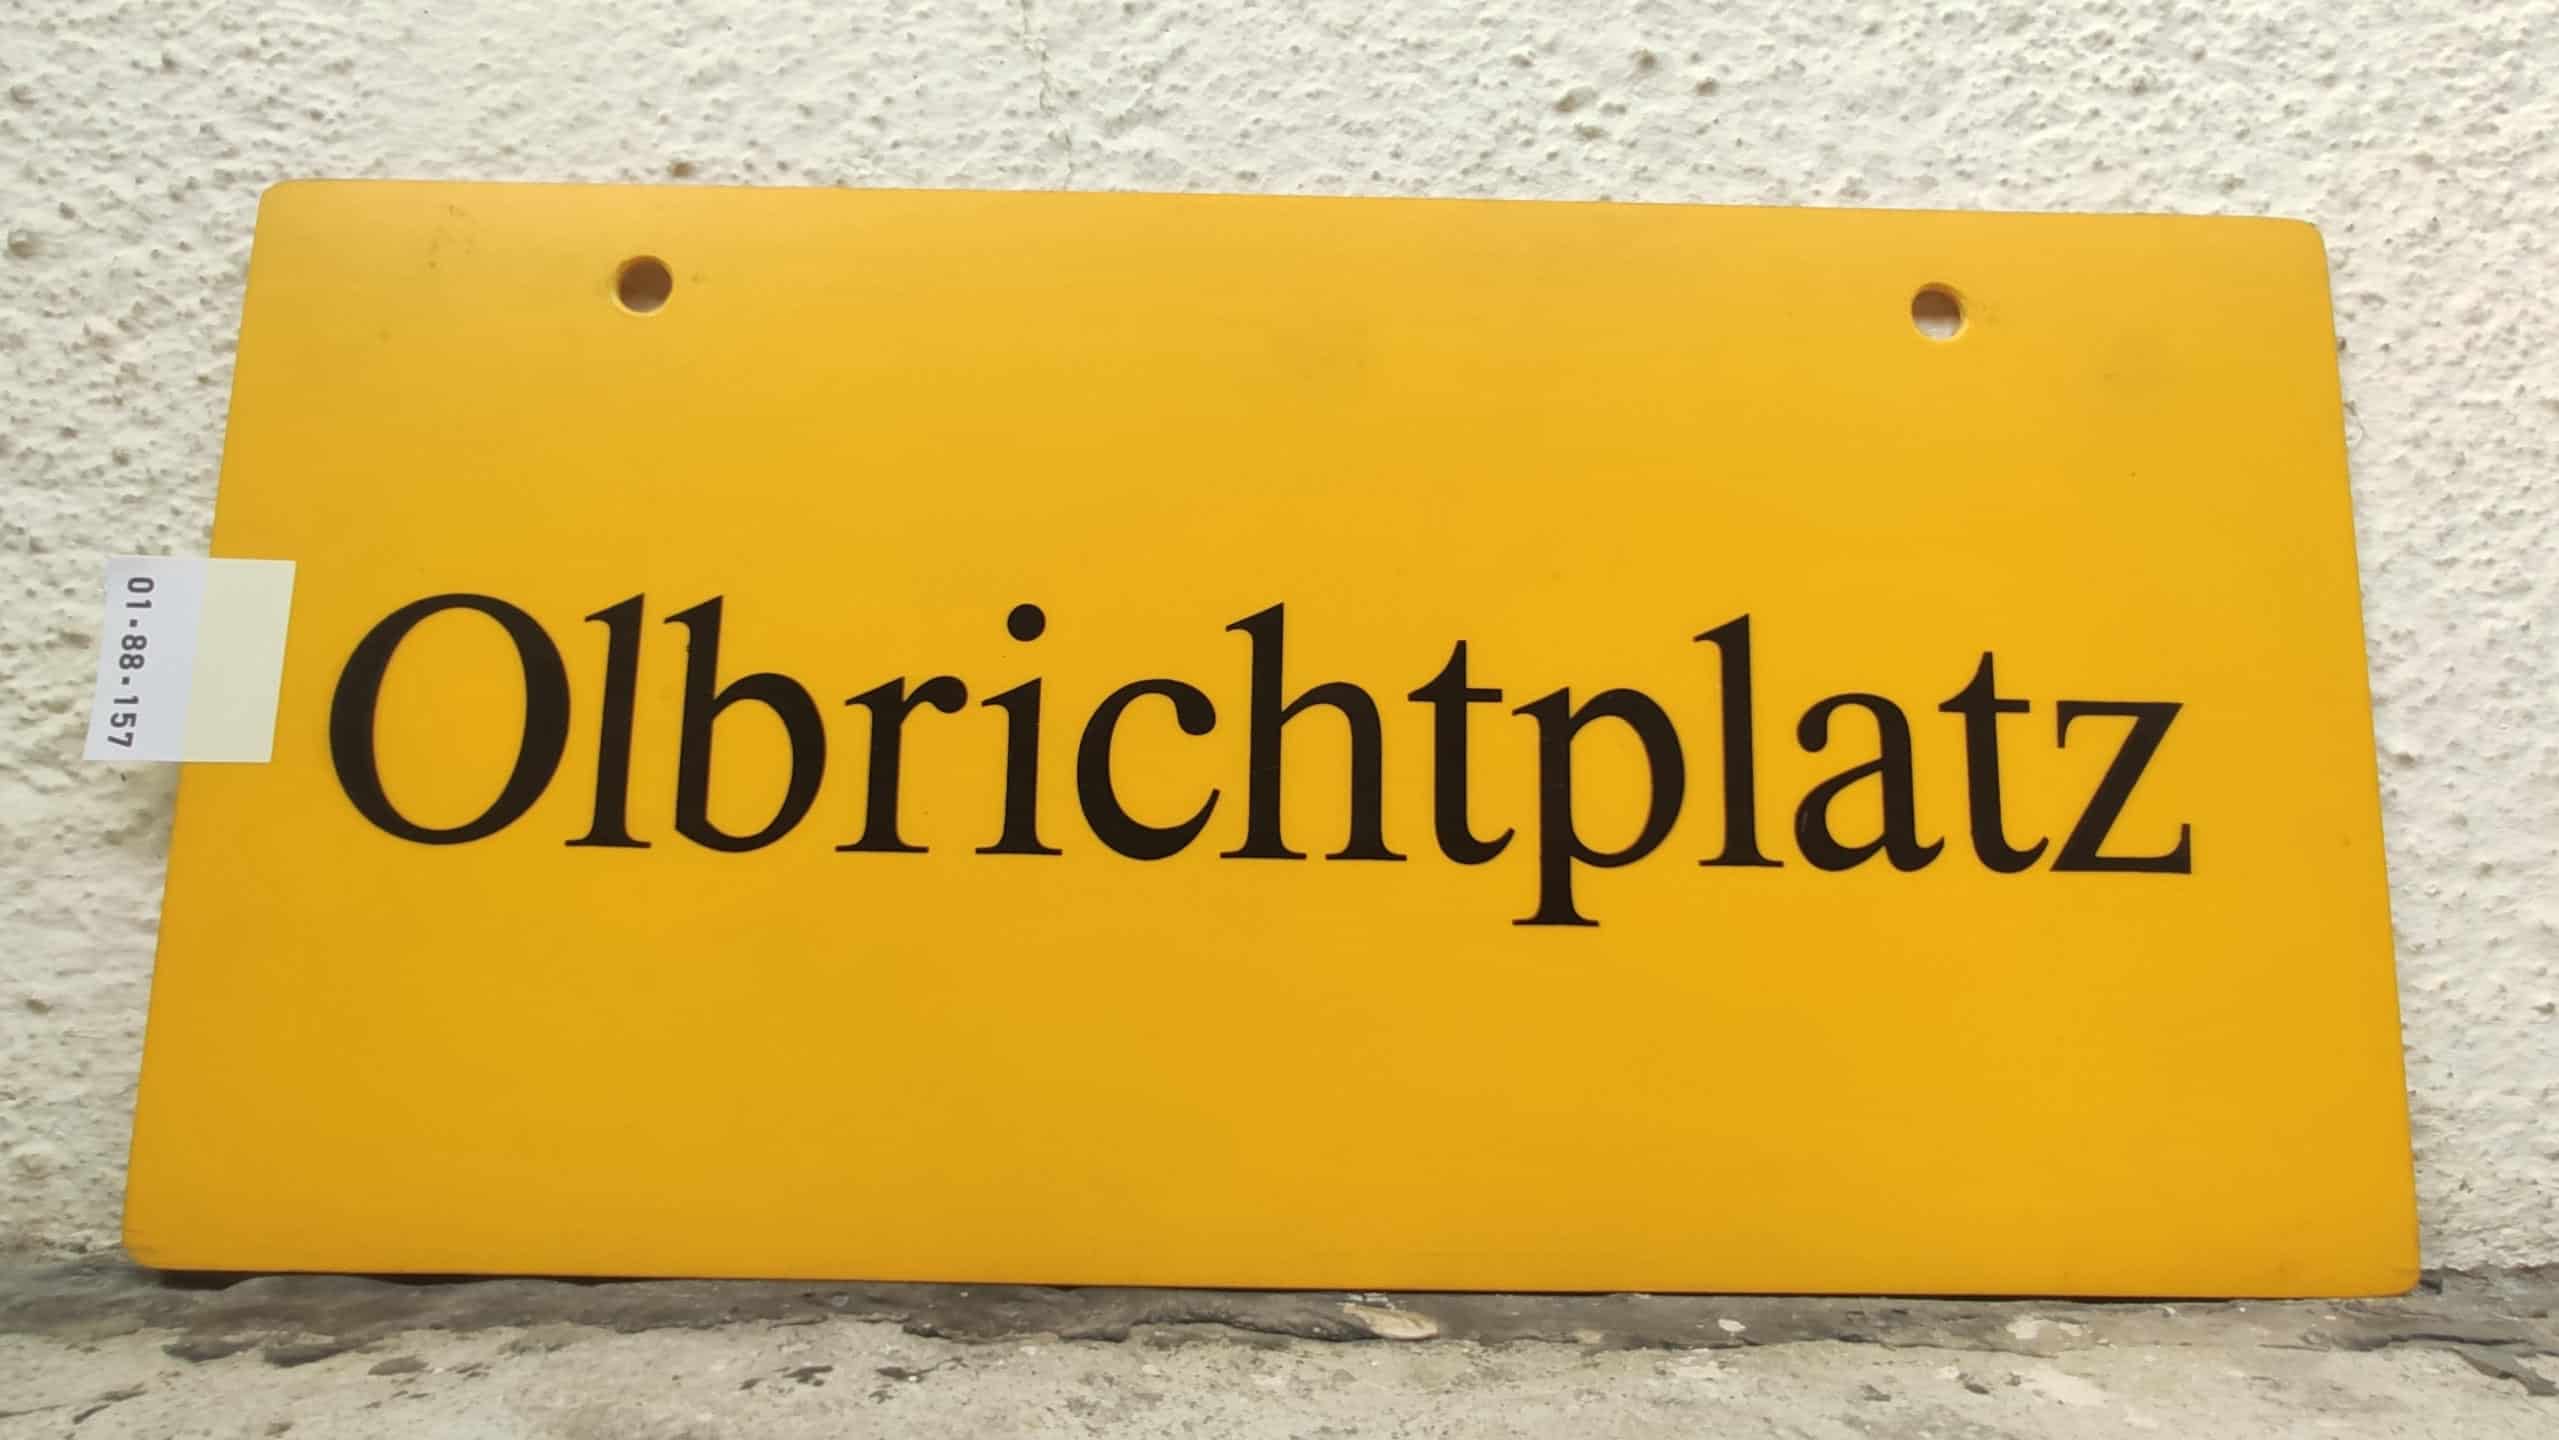 Olbrichtplatz